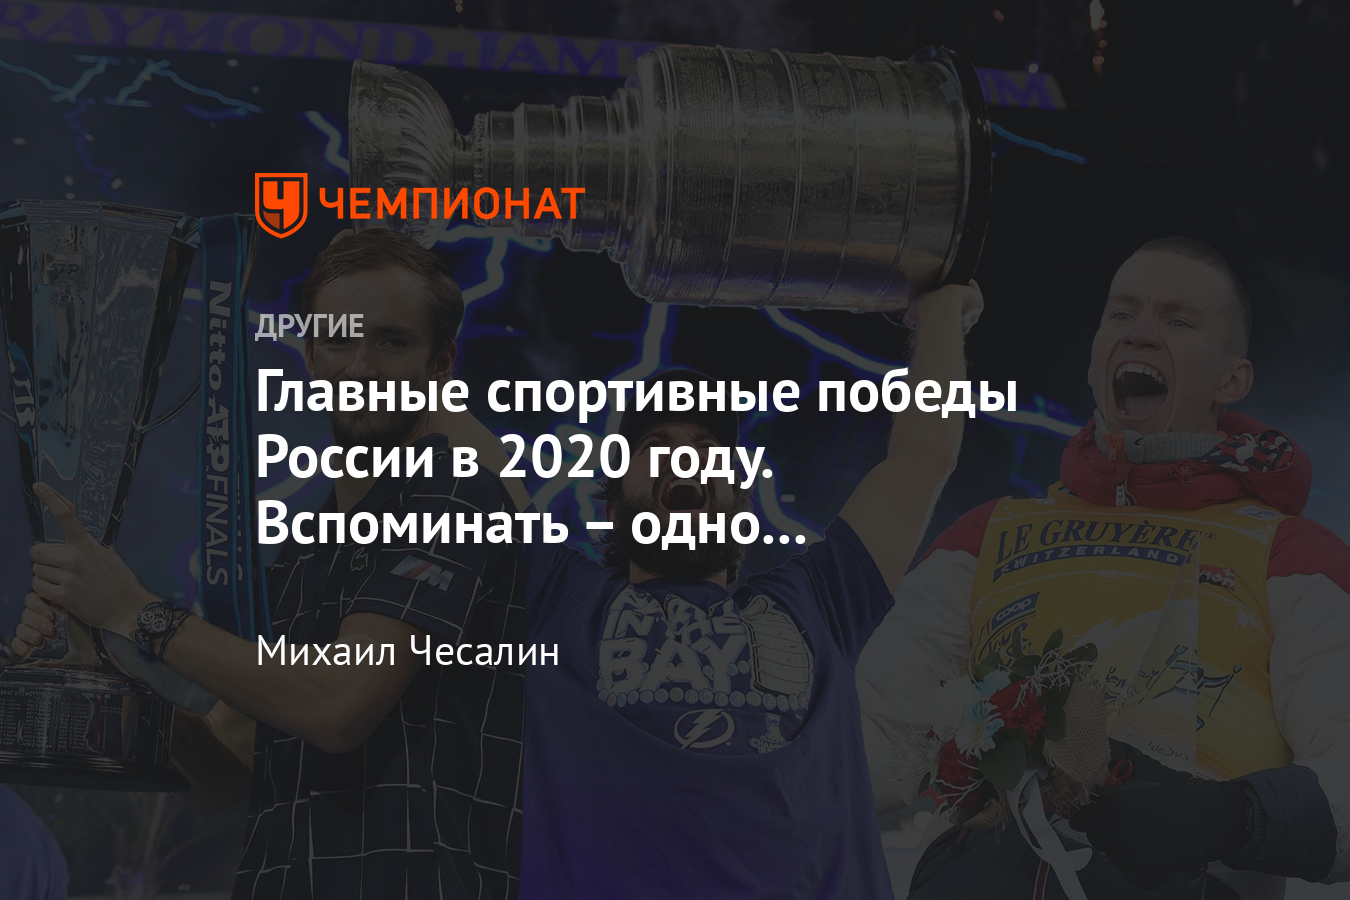 Главные победы России в 2020 году: Хабиб Нурмагомедов, Александр Большунов, Александр Логинов